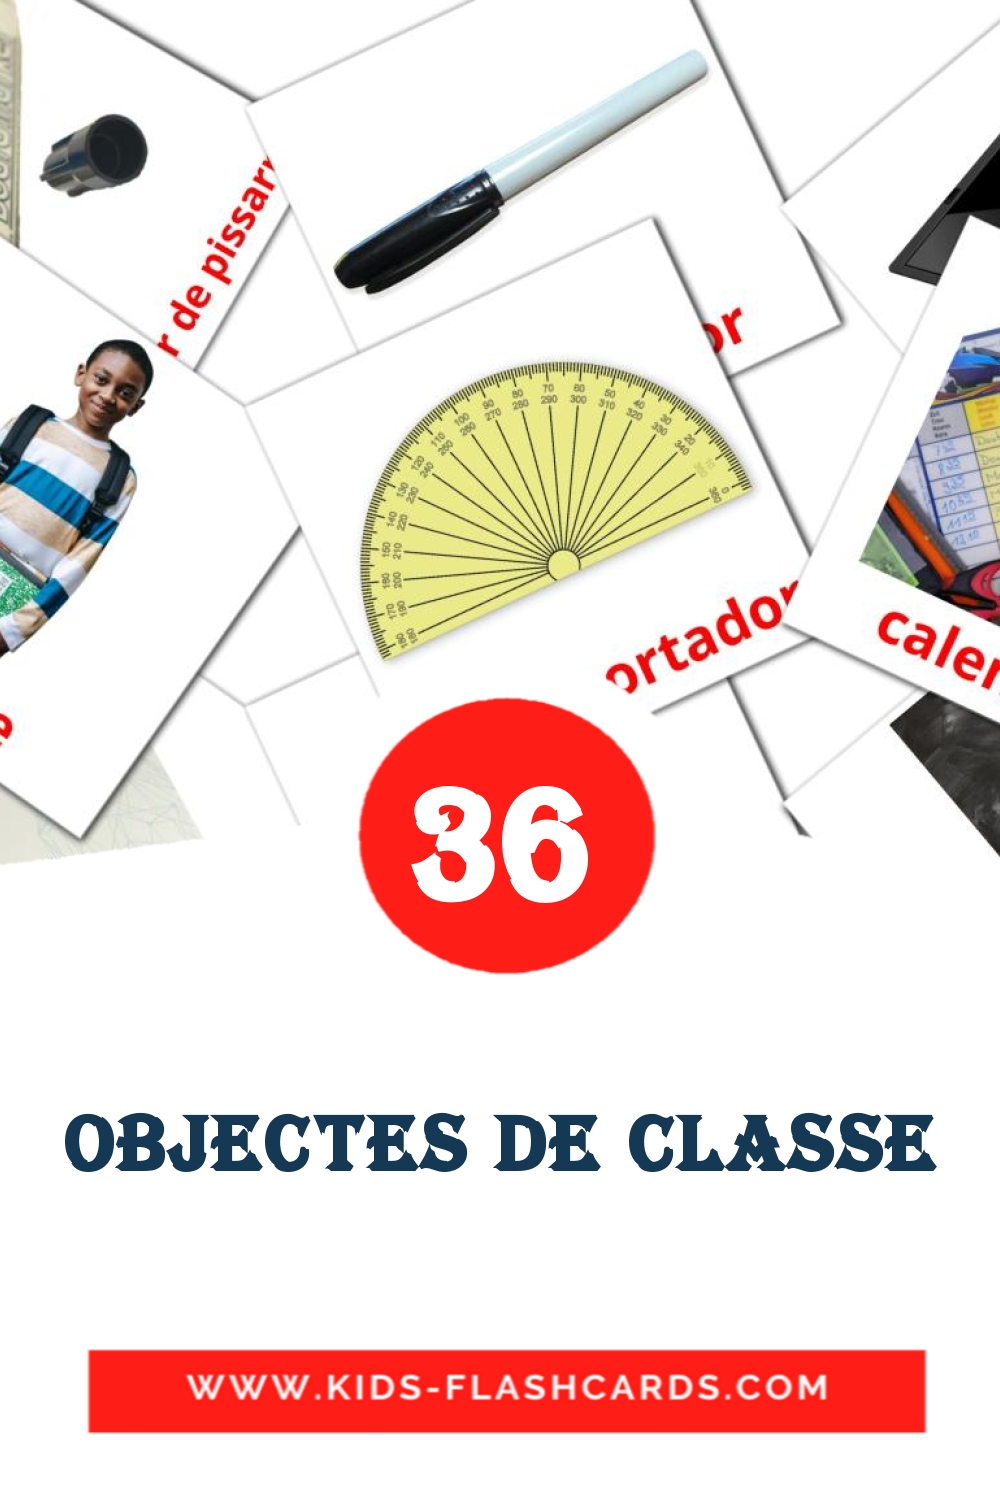 Objectes de classe на каталонском для Детского Сада (36 карточек)